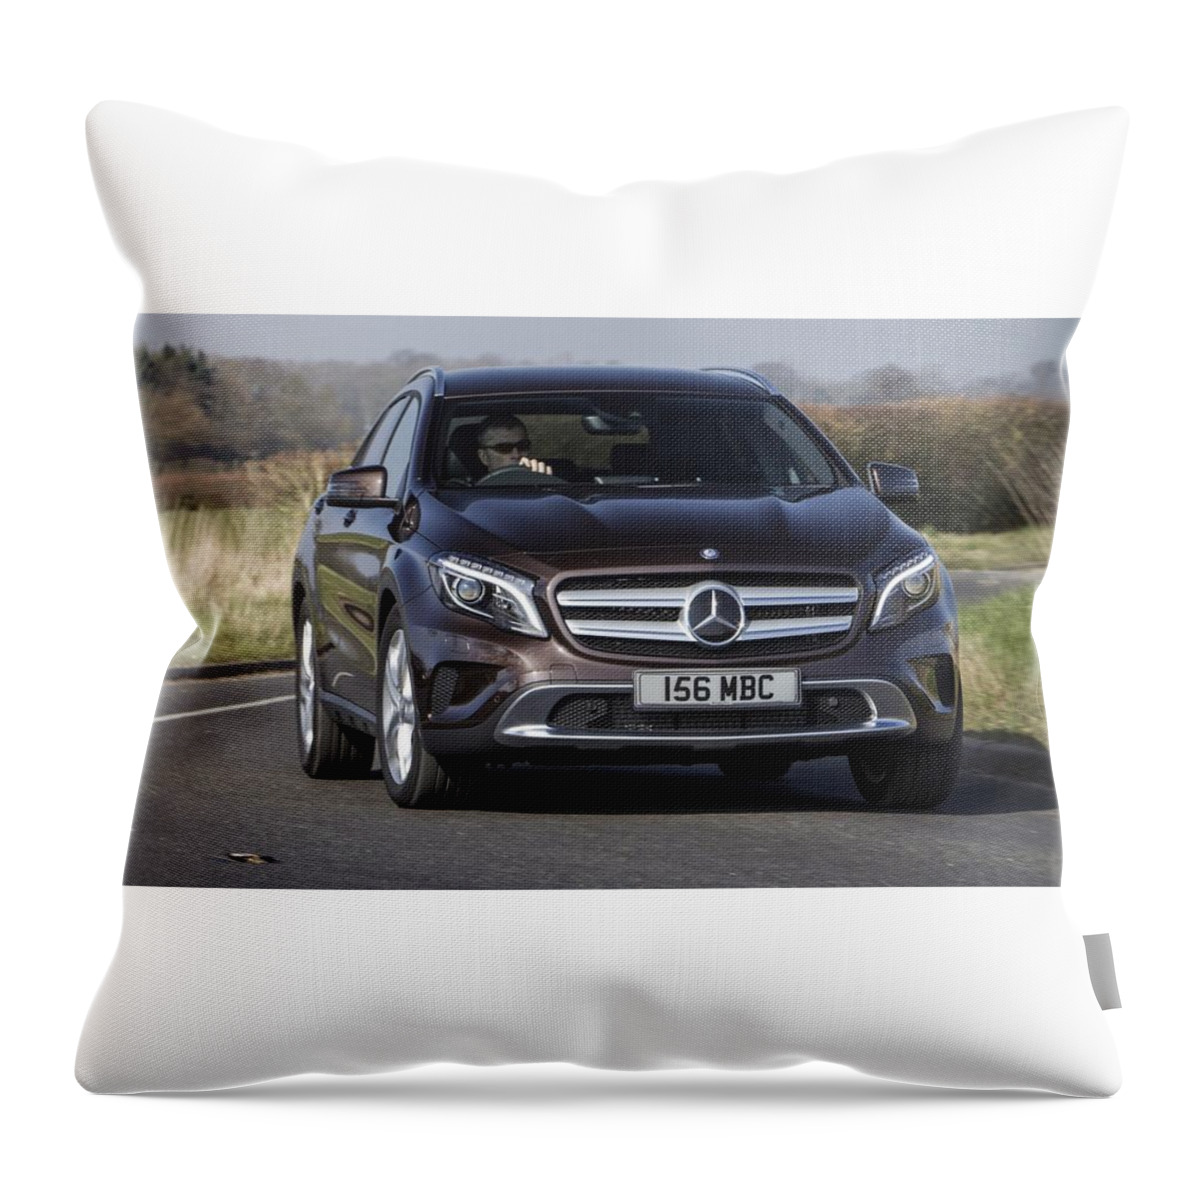 Mercedes-benz Gla-class Throw Pillow featuring the digital art Mercedes-Benz GLA-Class #1 by Maye Loeser